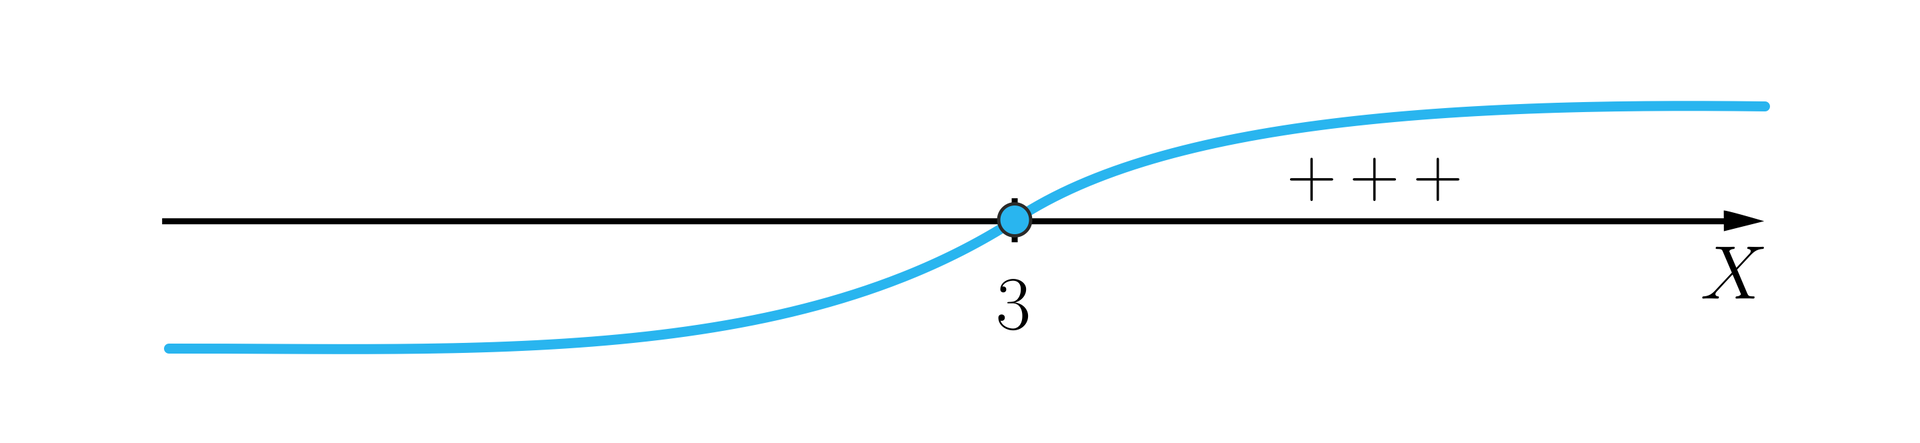 Ilustracja przedstawia poziomą oś X z zaznaczoną na środku cyfrą 3. Na rysunku zaznaczono wykres przypominający  rozciągniętą i spłaszczoną literę S. Po lewej stronie punktu 3 wykres biegnie pod osią, a po prawej stronie od punktu 3 biegnie nad osią. Pomiędzy osią  a wykresem leżącym nad nią zaznaczono trzema plusami fakt, iż dla wartości większych, niż 3 iksy są większe od zera. Punkt 3 zaznaczono zamalowanym kółkiem.